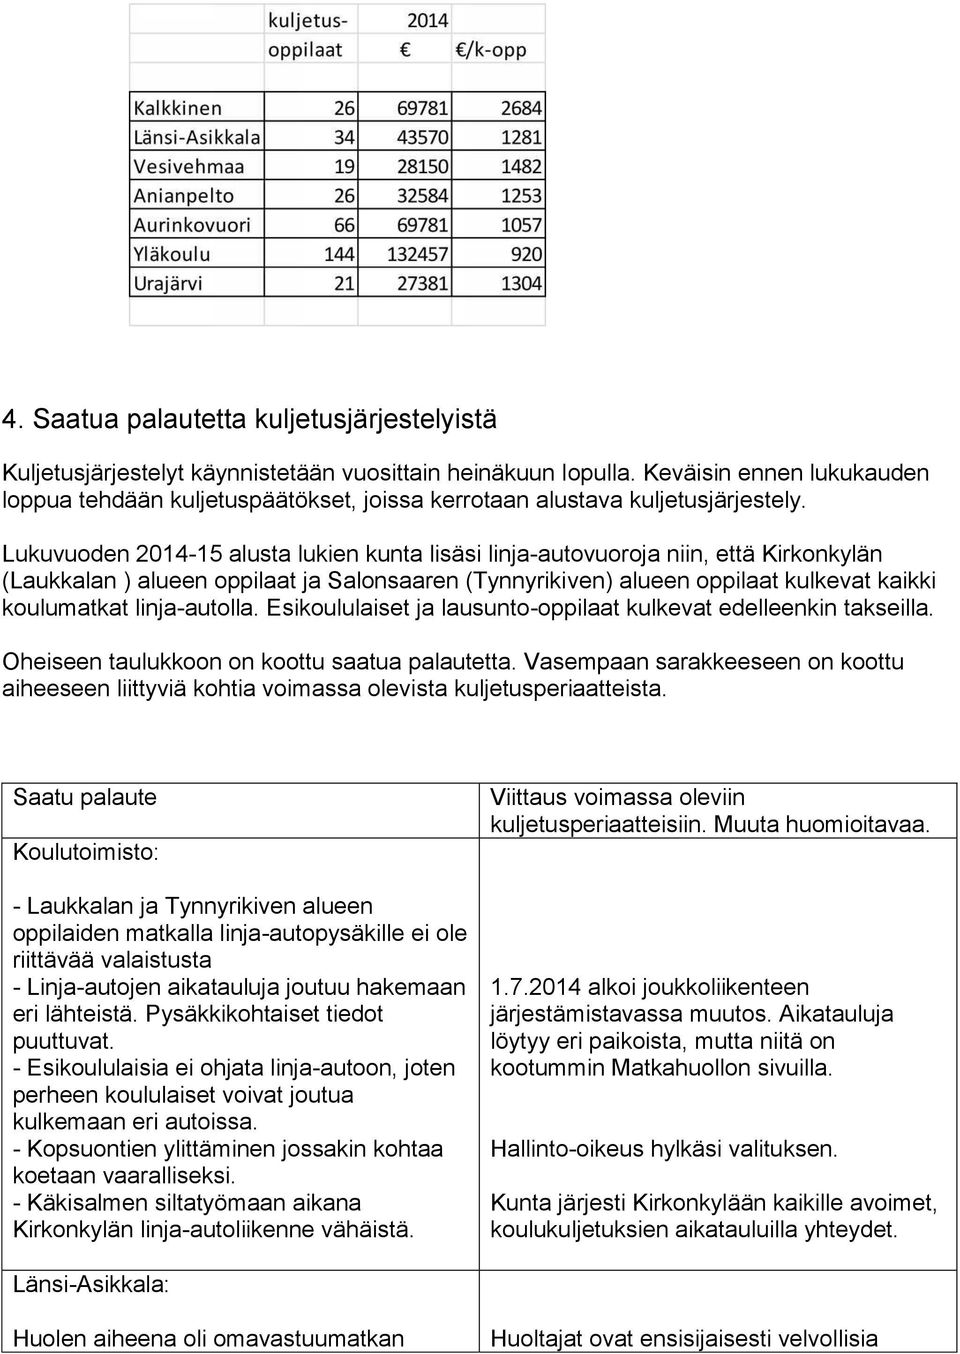 Lukuvuoden 2014-15 alusta lukien kunta lisäsi linja-autovuoroja niin, että Kirkonkylän (Laukkalan ) alueen oppilaat ja Salonsaaren (Tynnyrikiven) alueen oppilaat kulkevat kaikki koulumatkat